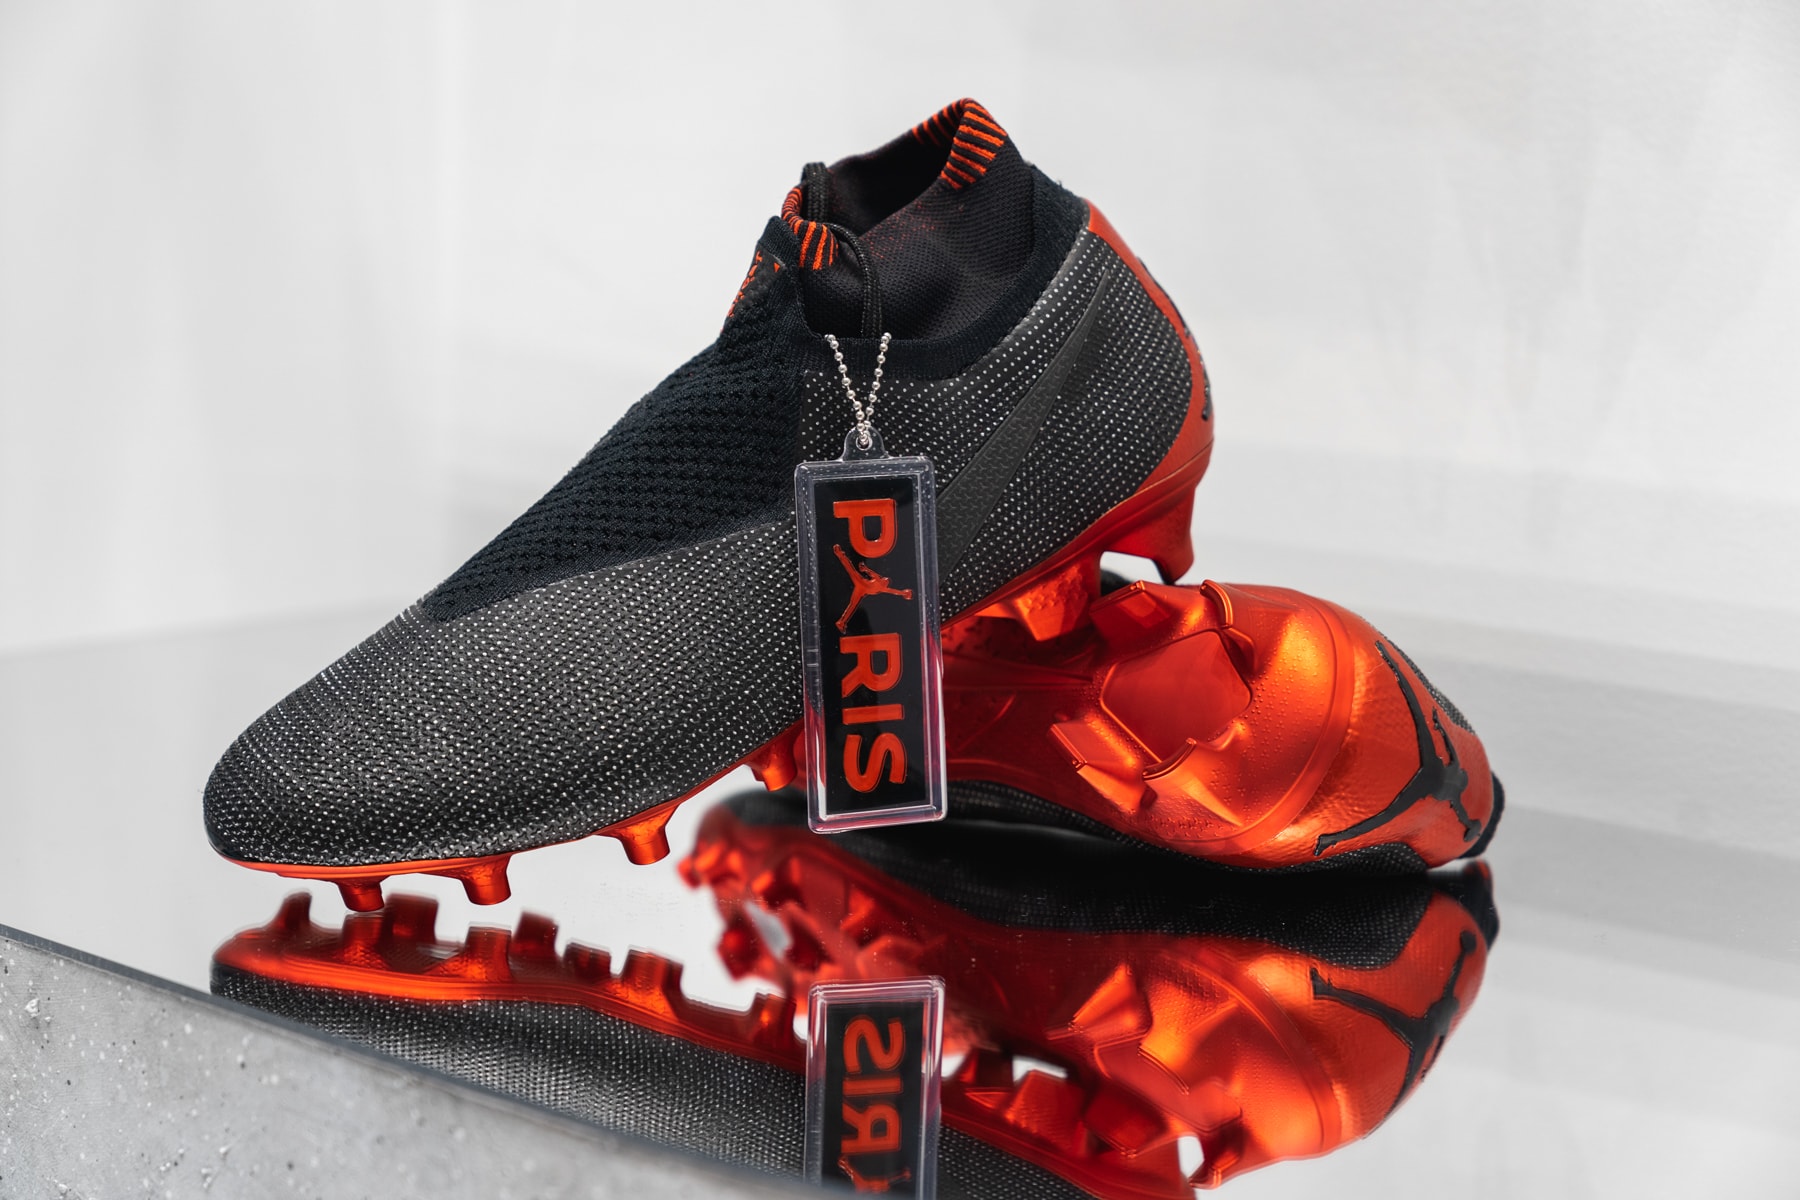 jordan brand paris saint germain collection exclusive look 2018 2019 football boots sneakers apparel air jordan 5 air jordan 1